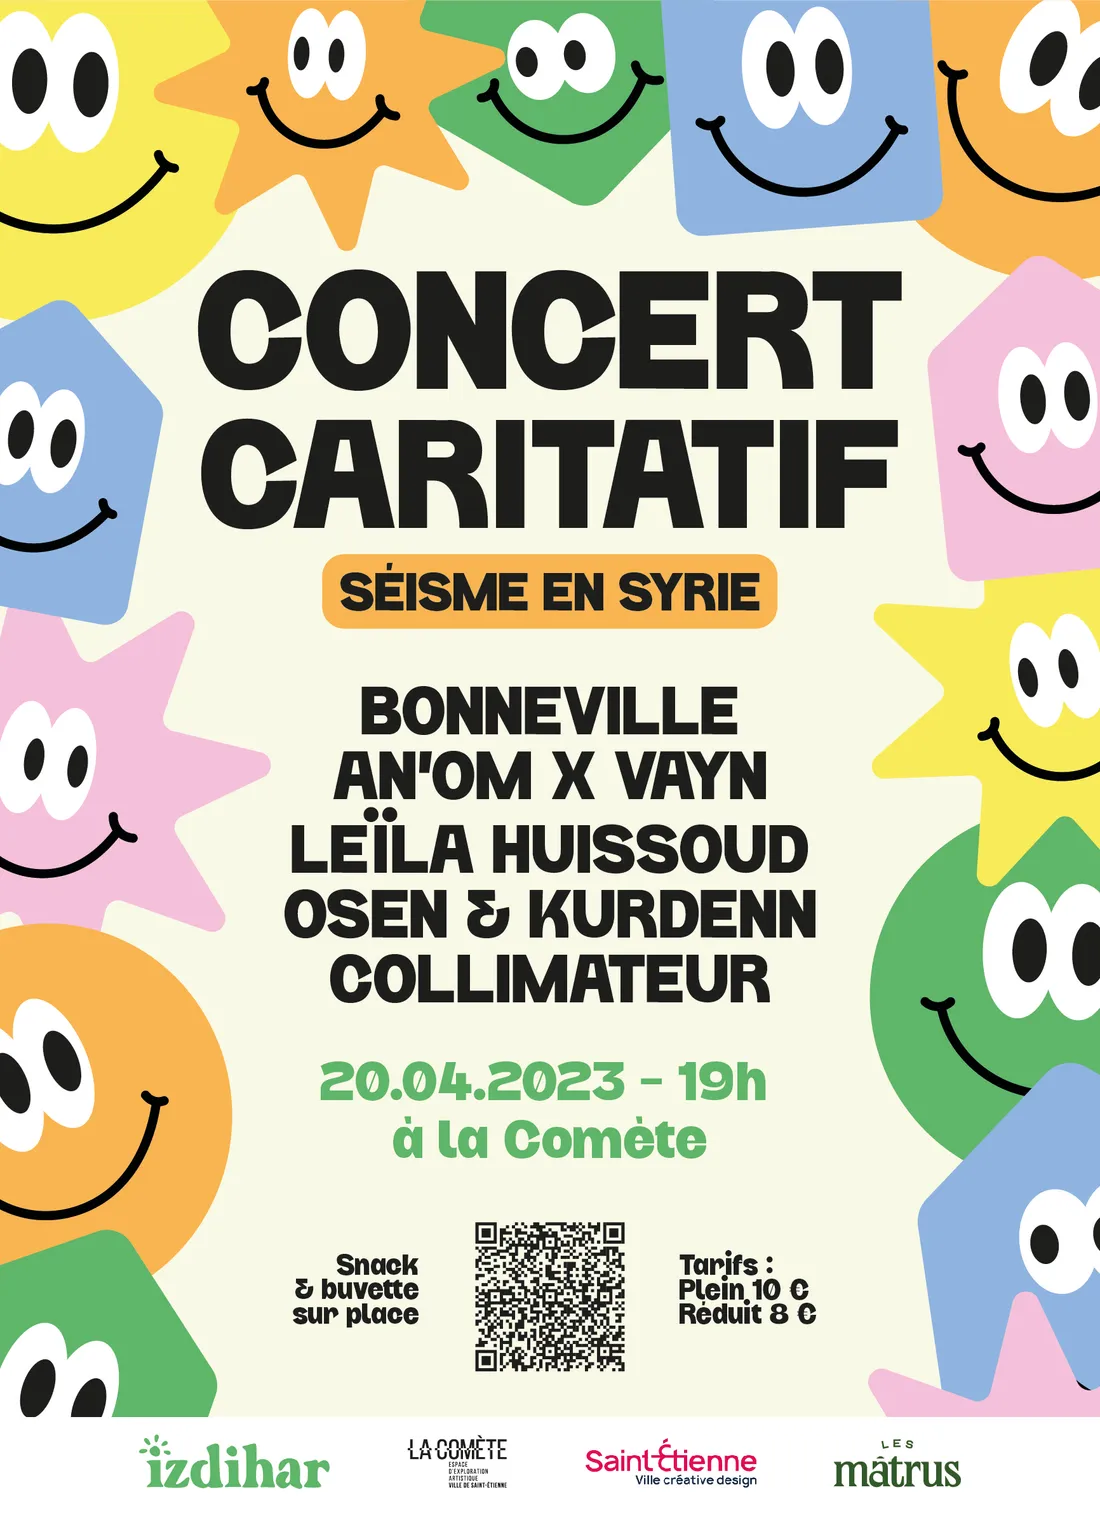 Concert caritatif à la Comète à St-Etienne